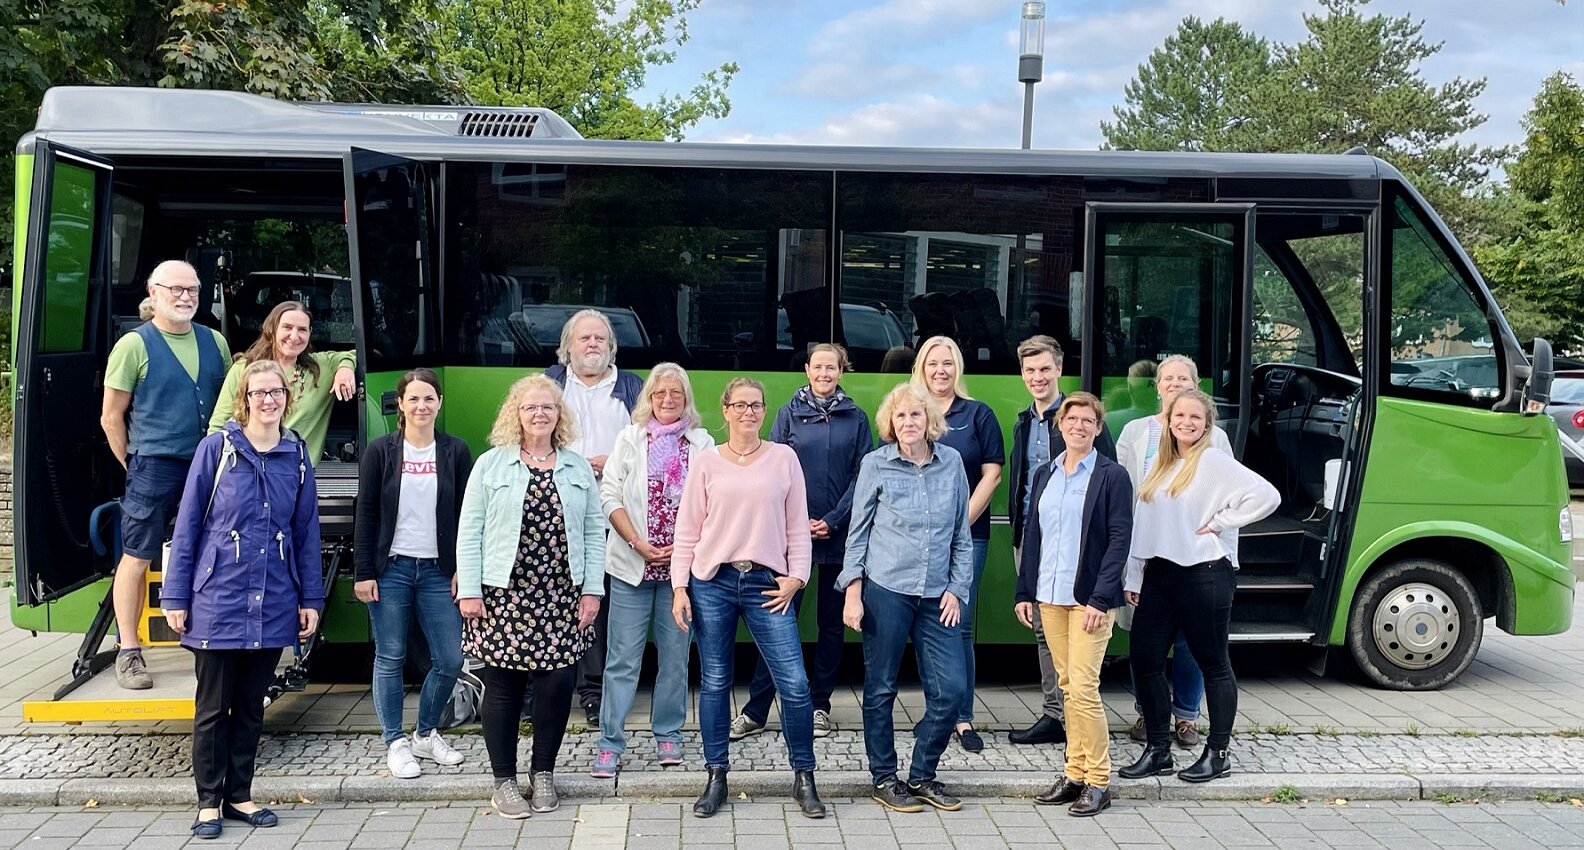 Gruppenfoto mit 15 Männern und Frauen aus der Lokalen Allianz vor dem grünen Bus